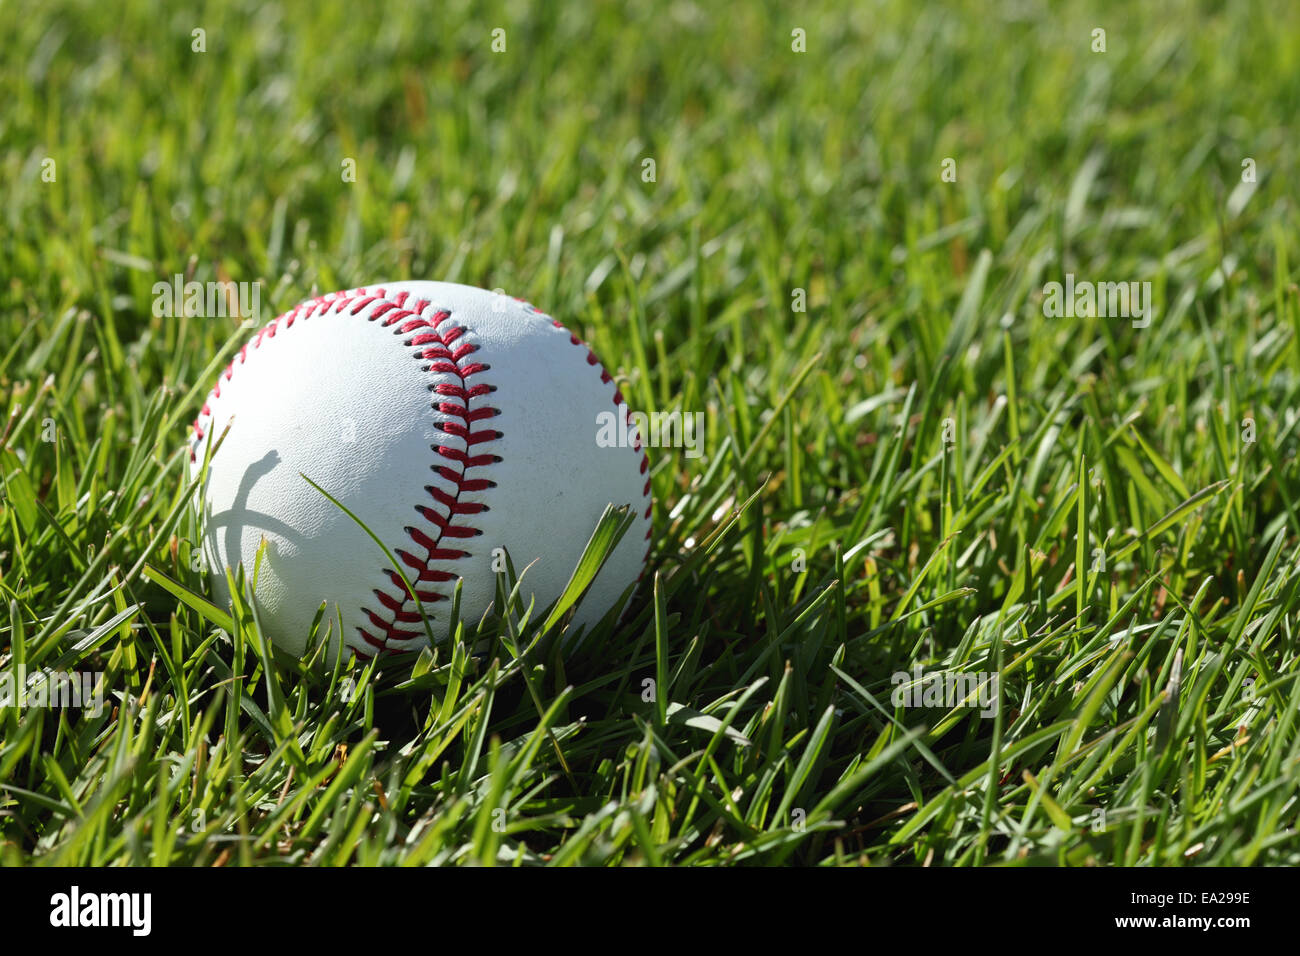 Una chiusura delle cuciture rosse su un baseball, posa in erba verde Foto Stock